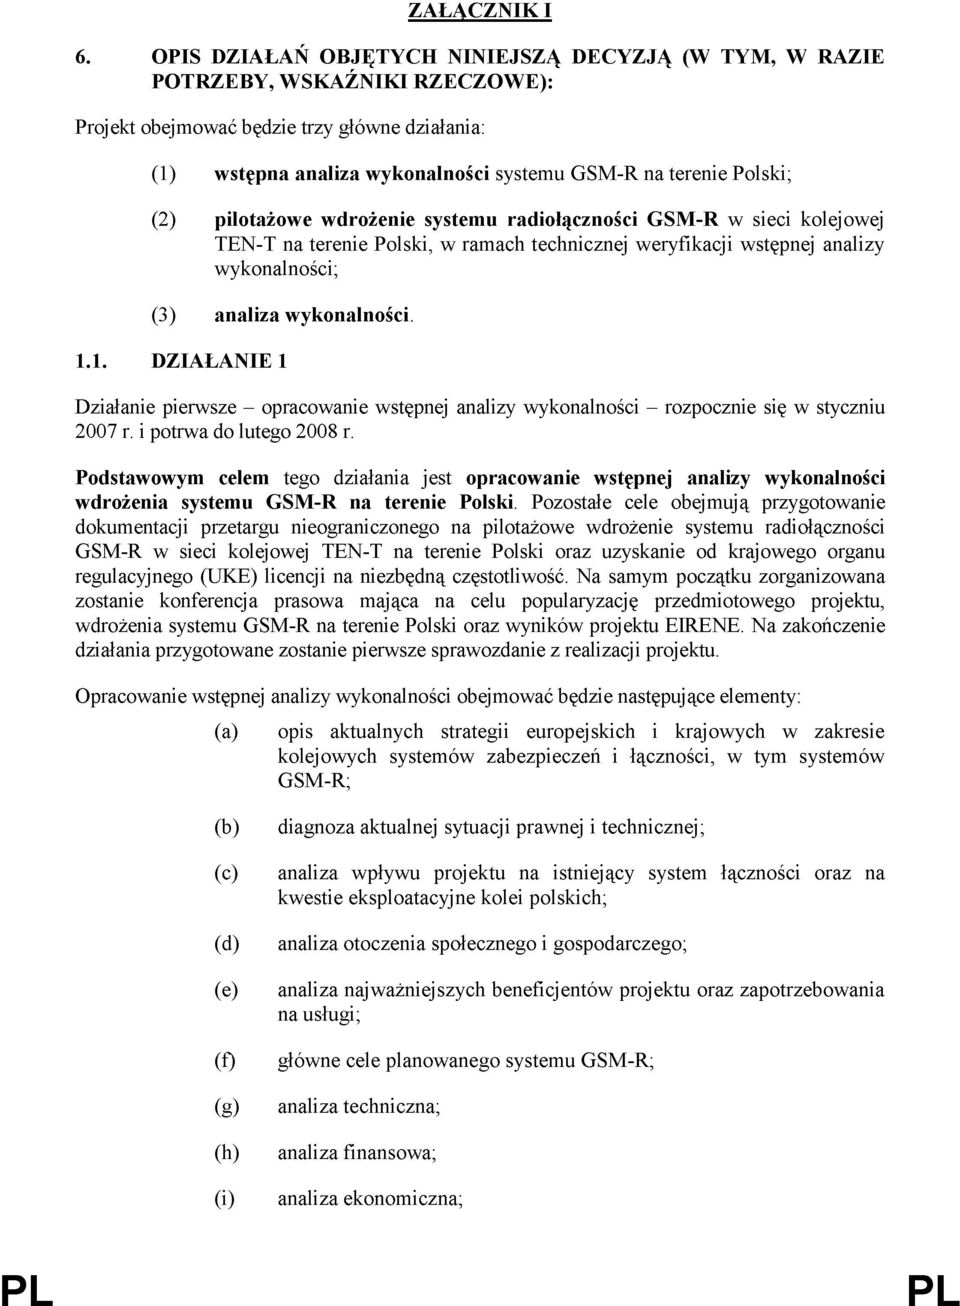 Polski; (2) pilotażowe wdrożenie systemu radiołączności GSM-R w sieci kolejowej TEN-T na terenie Polski, w ramach technicznej weryfikacji wstępnej analizy wykonalności; (3) analiza wykonalności. 1.